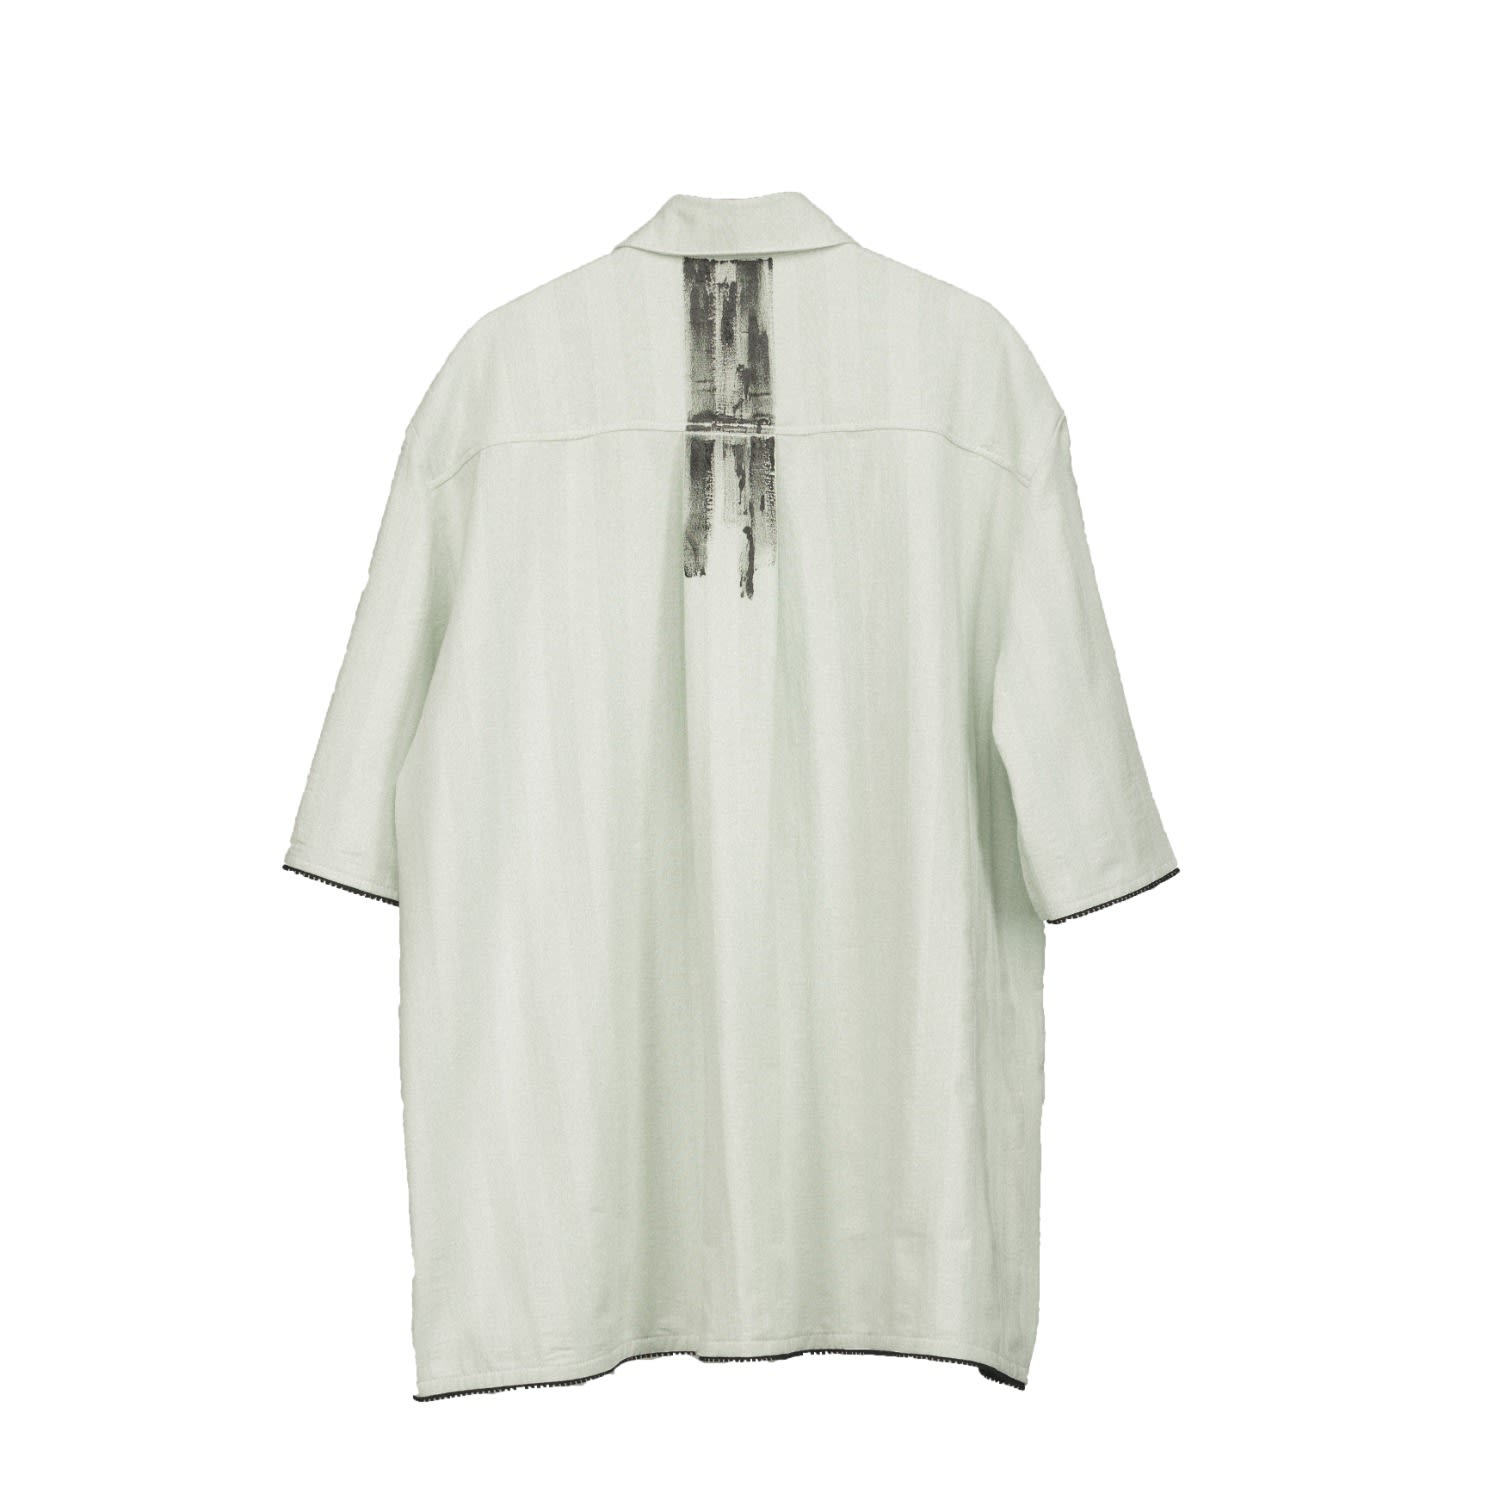 Men's Bezi Shirt White Mint Small ZSIGMOND